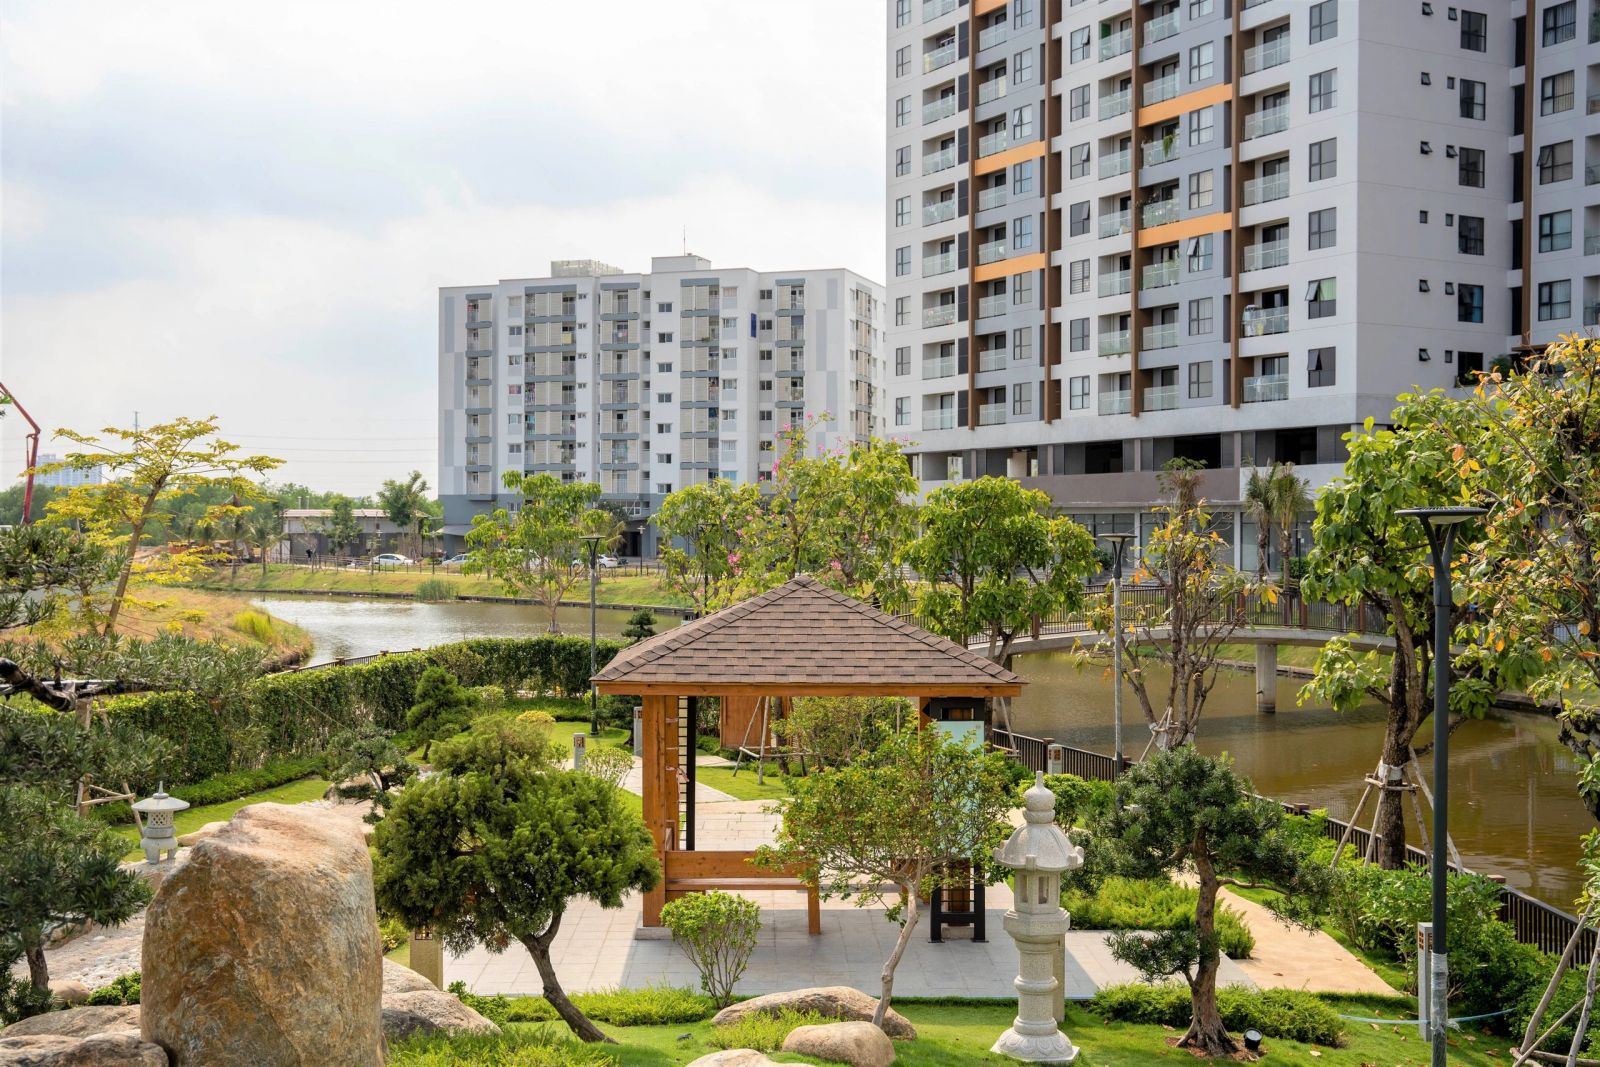 Mizuki Park - dự án xanh thu hút giới trí thức phía nam TP.HCM - ảnh 1